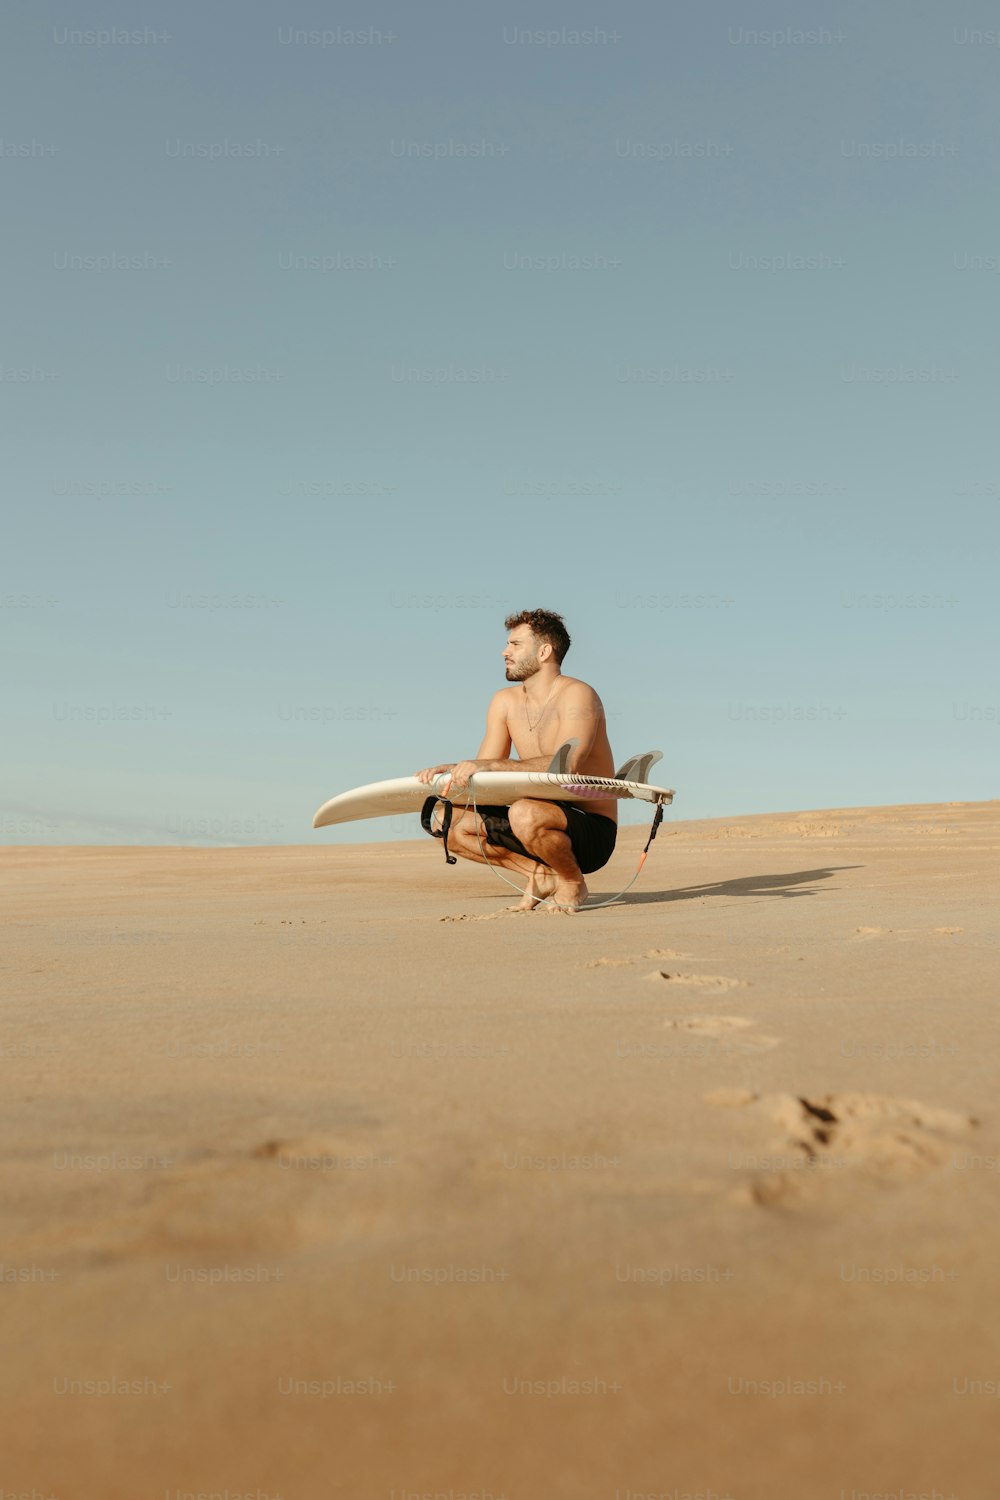 Ein Mann, der kniet, während er ein Surfbrett hält